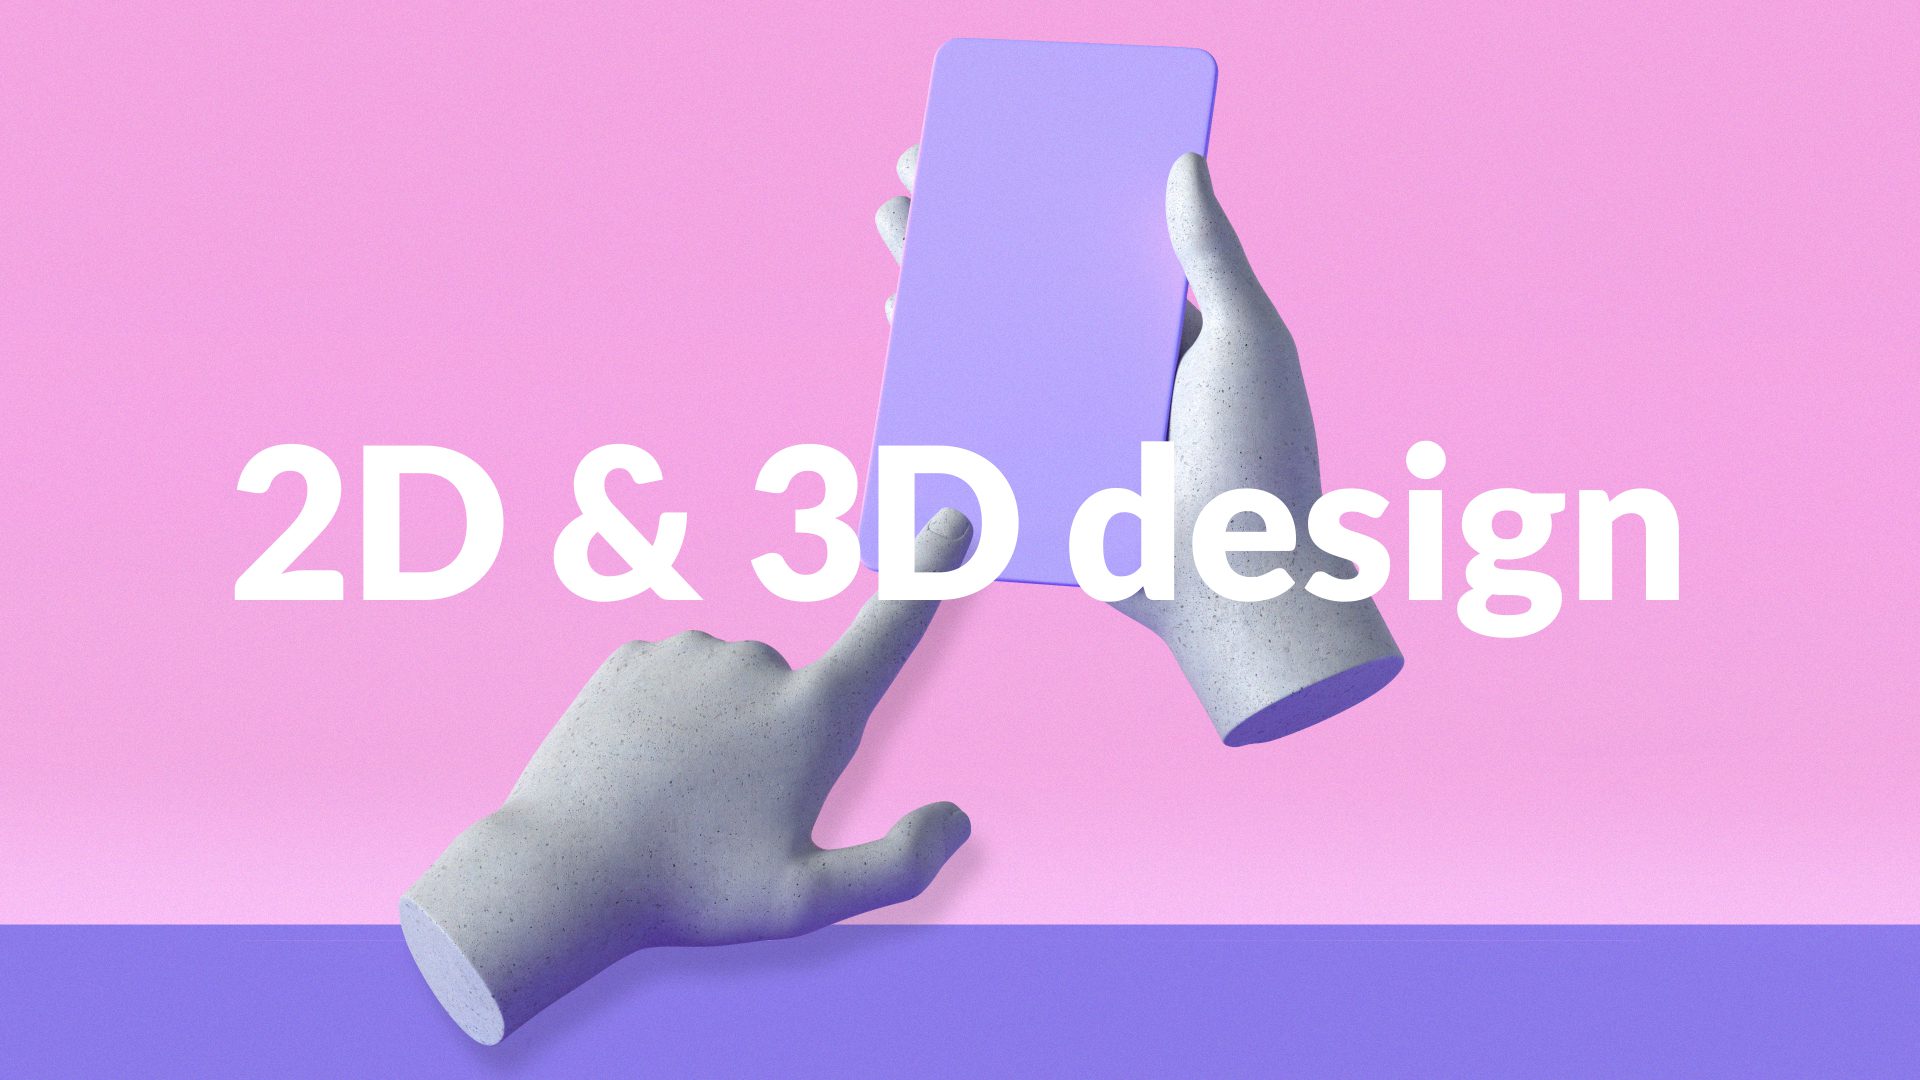 2D & 3D design